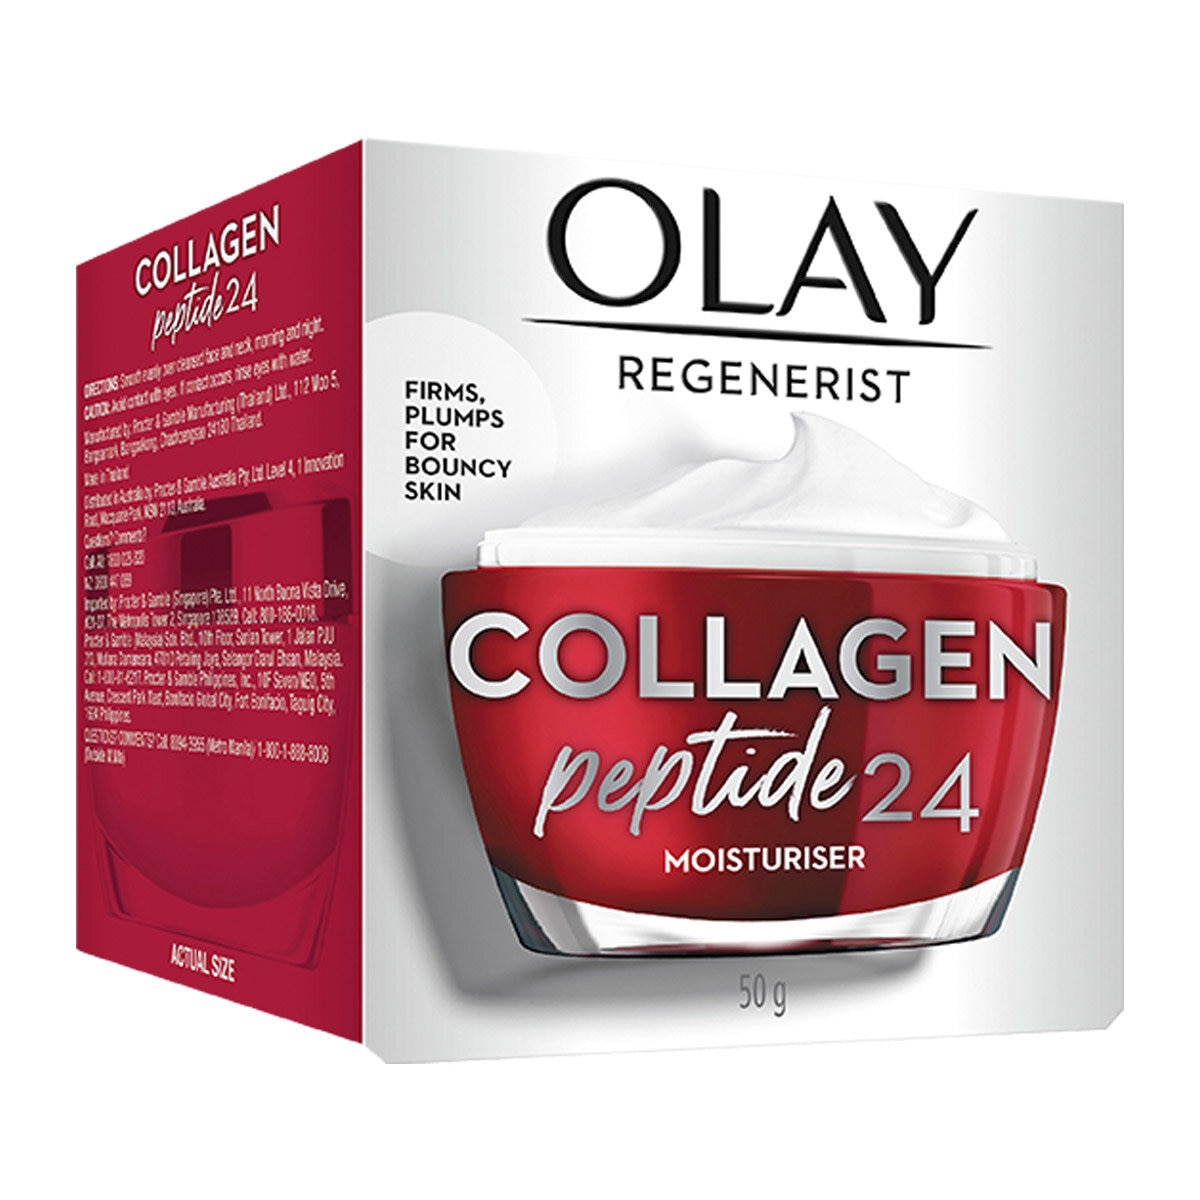 Olay Regenerist Collagen Peptide24 Moisturiser 2 x 50g